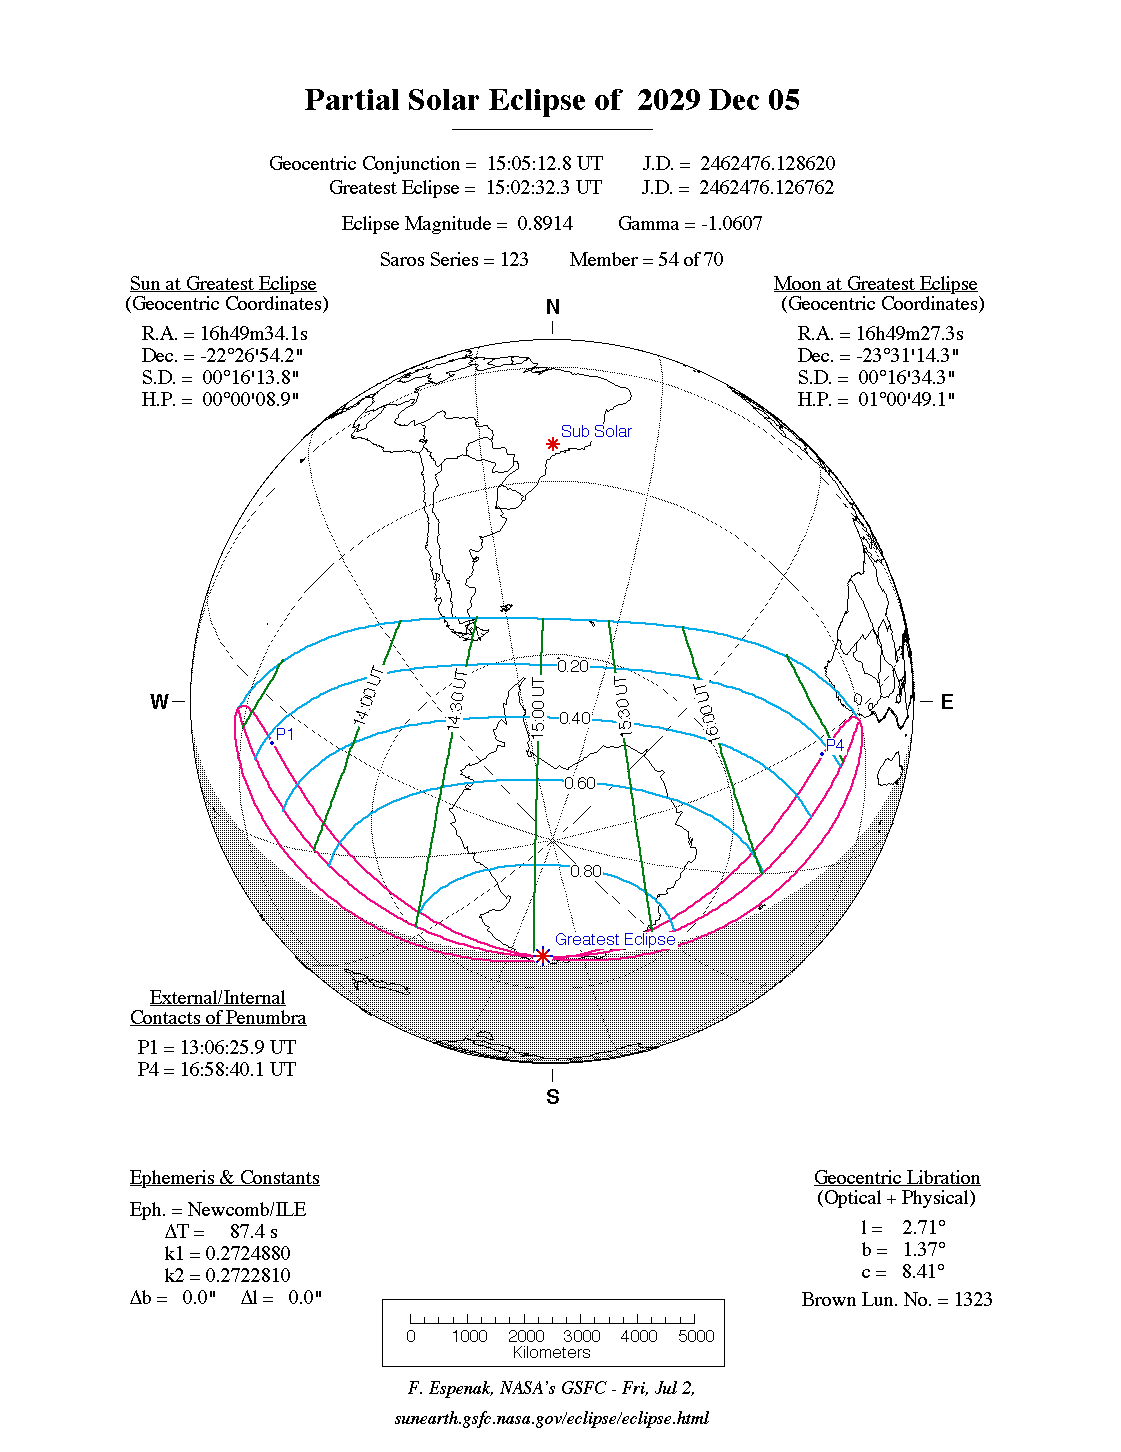 Verlauf der Partiellen Sonnenfinsternis am 05.12.2029